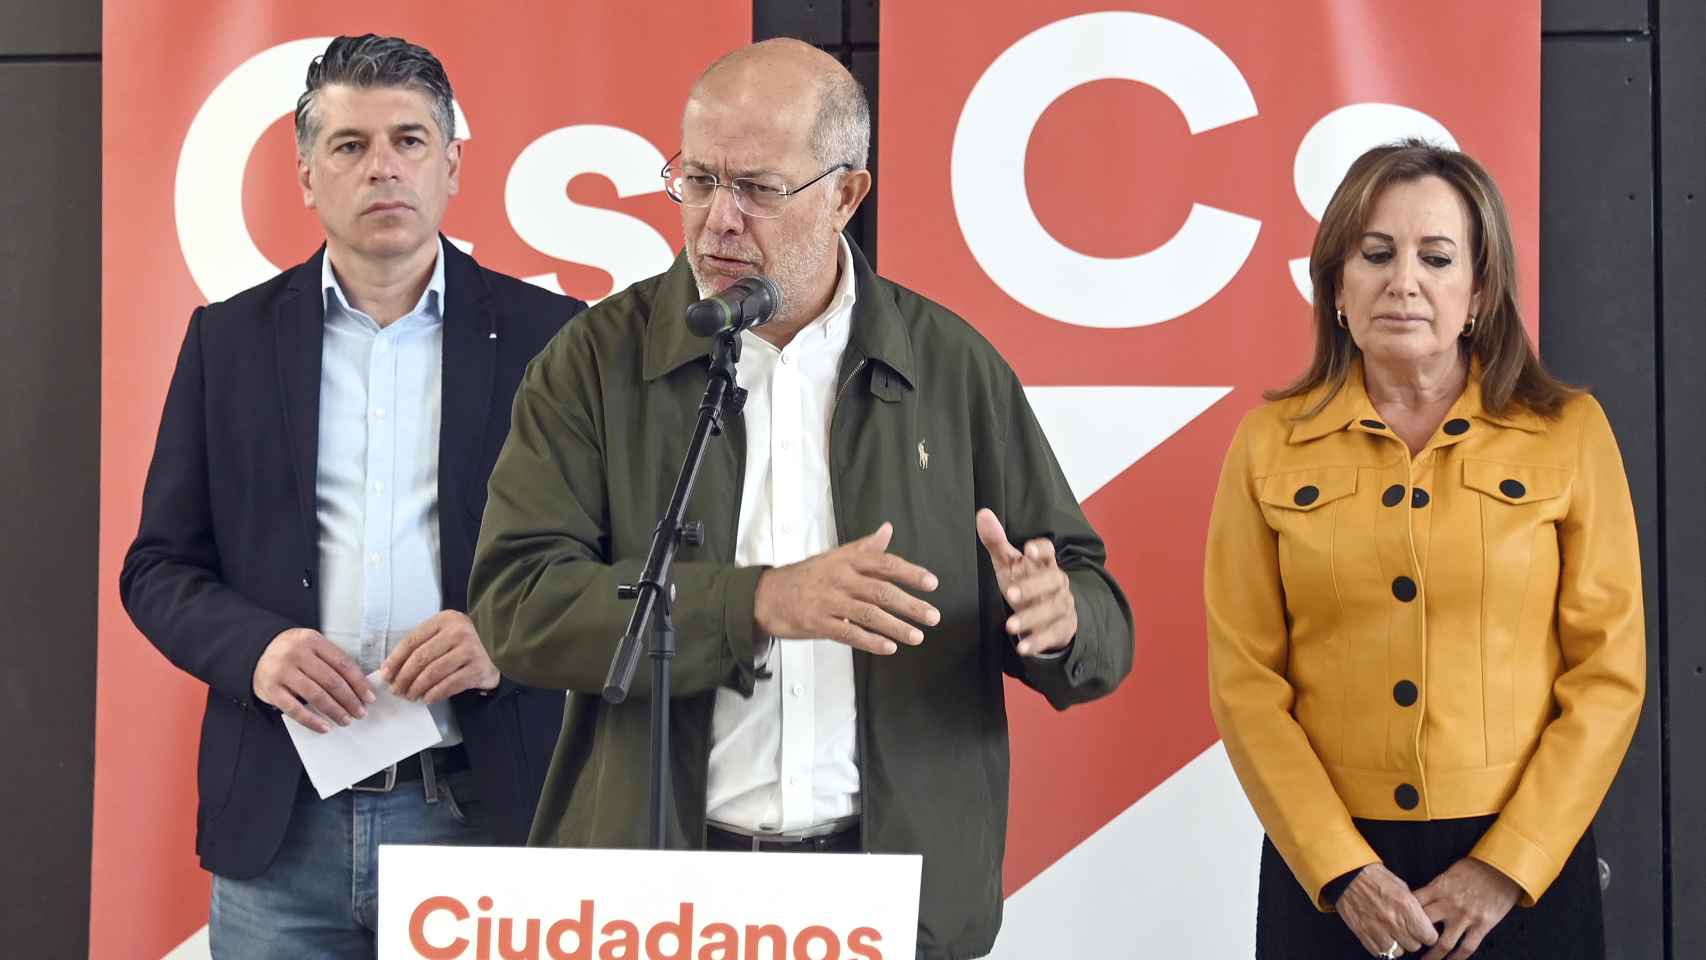 El procurador de Ciudadanos en las Cortes de Castilla y León, Francisco Igea, acompañado por los concejales de Burgos, informa de los objetivos de su formación en el nuevo curso político